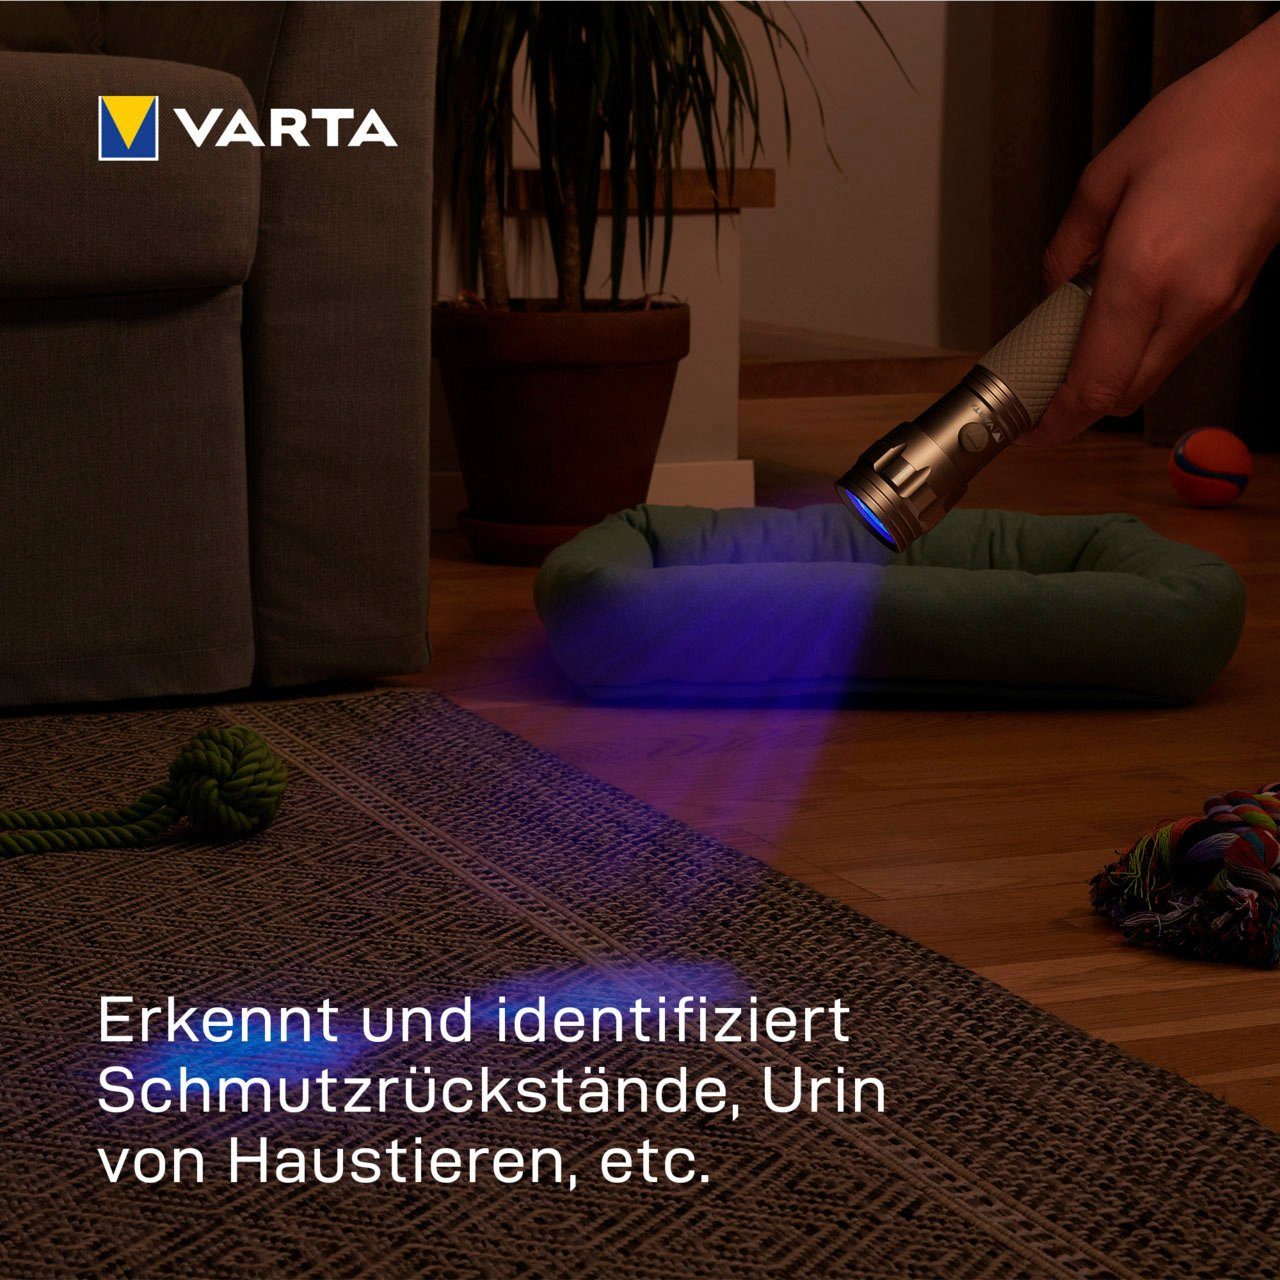 macht Schwarzlicht Licht Taschenlampe VARTA Hygienehilfe Leuchte mit Unsichtbares sichtbar UV (Set),